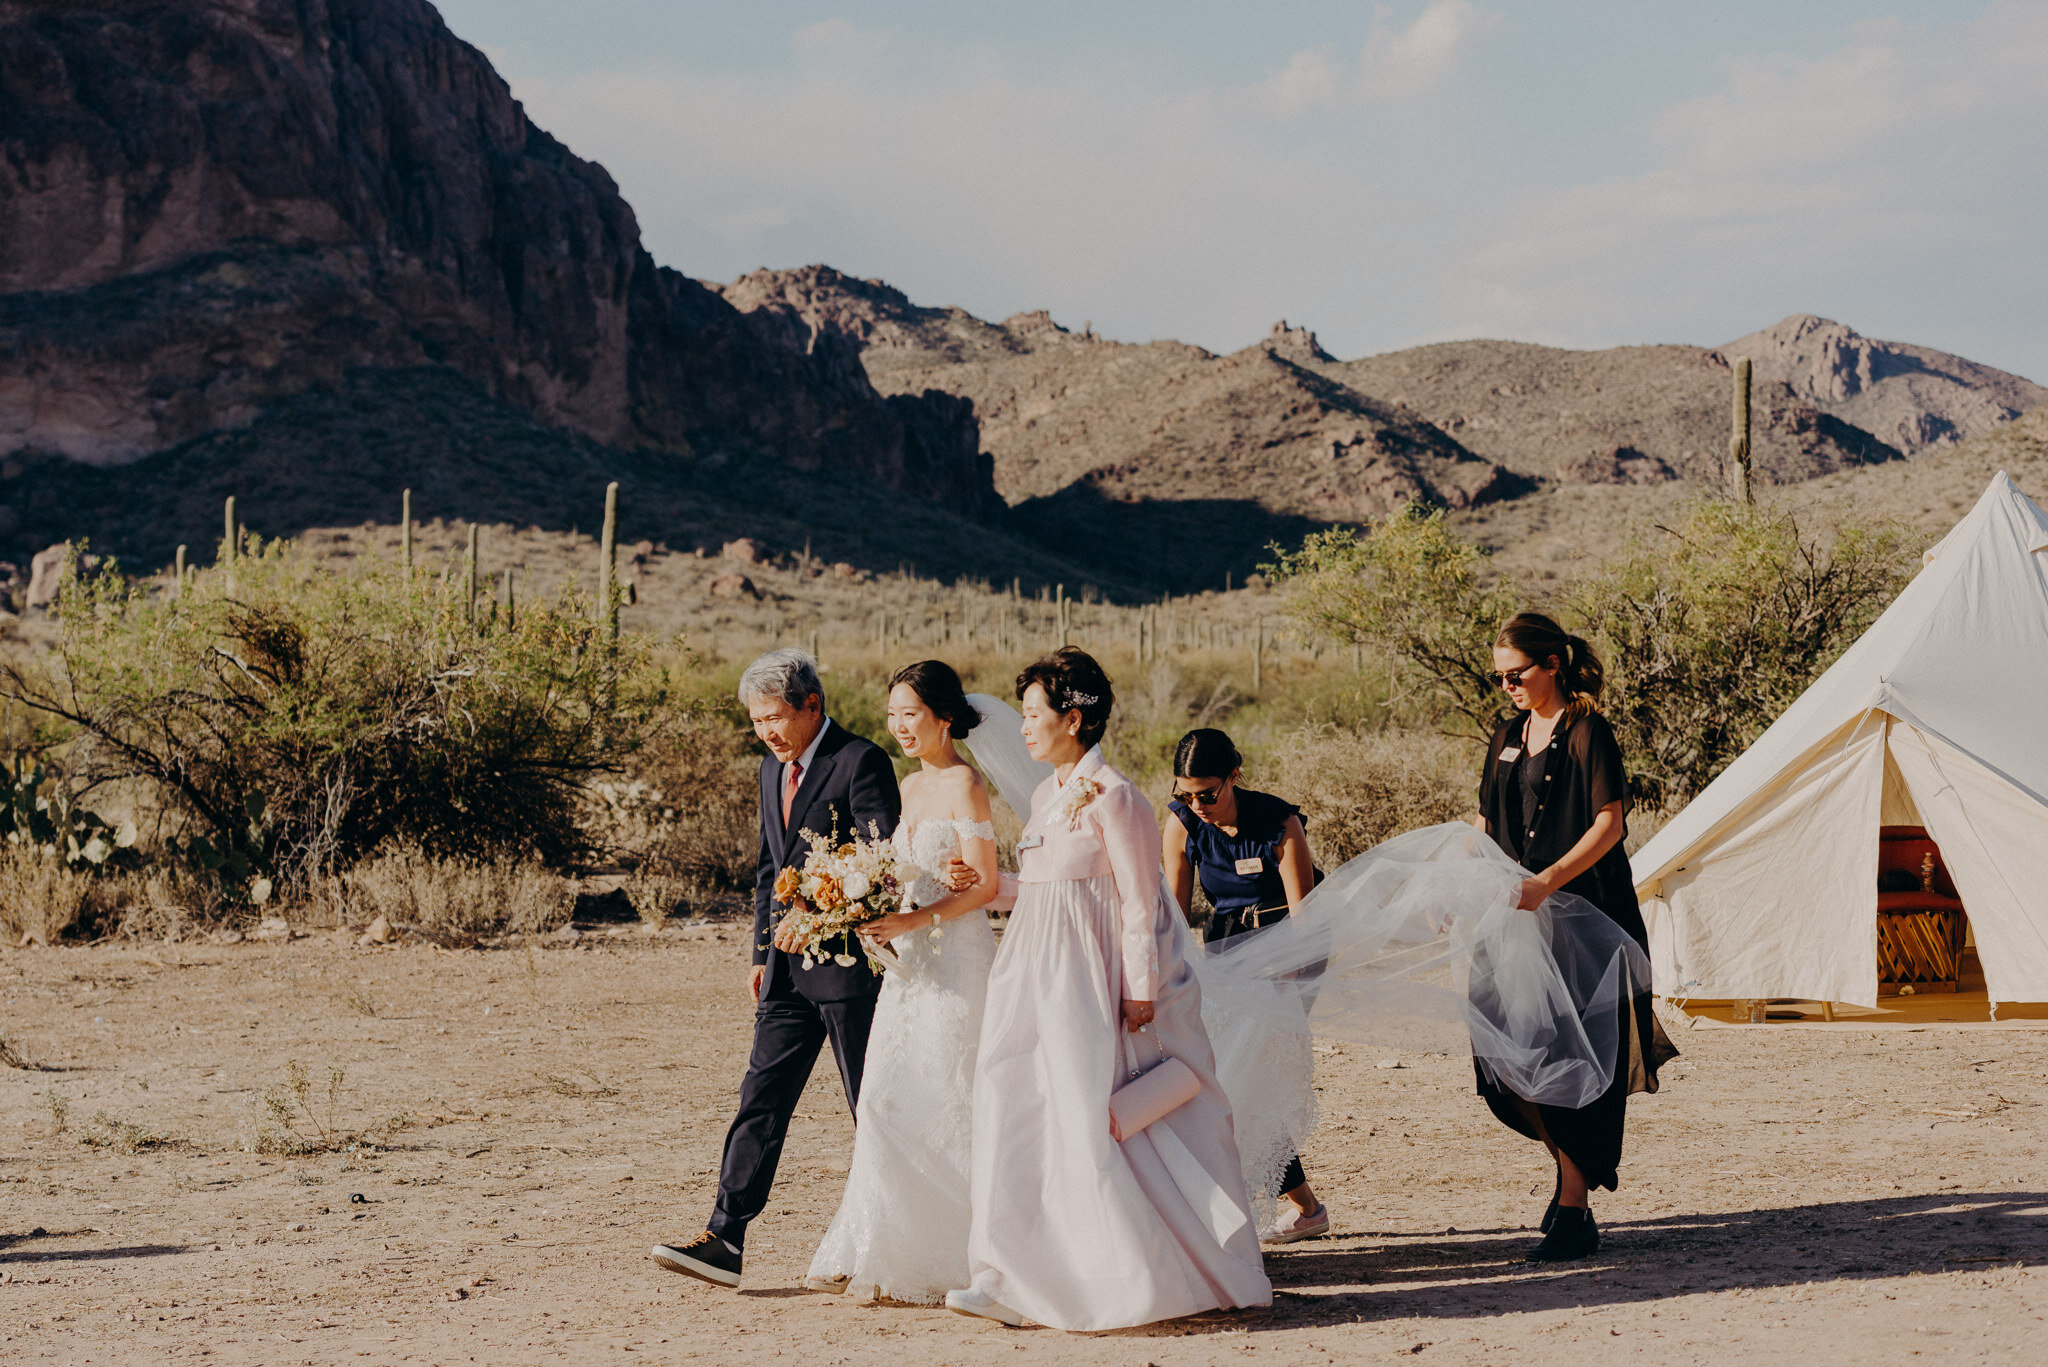 california wedding photograhers - desert elopement - supersition mountains - isaiahandtaylor.com-66.jpg